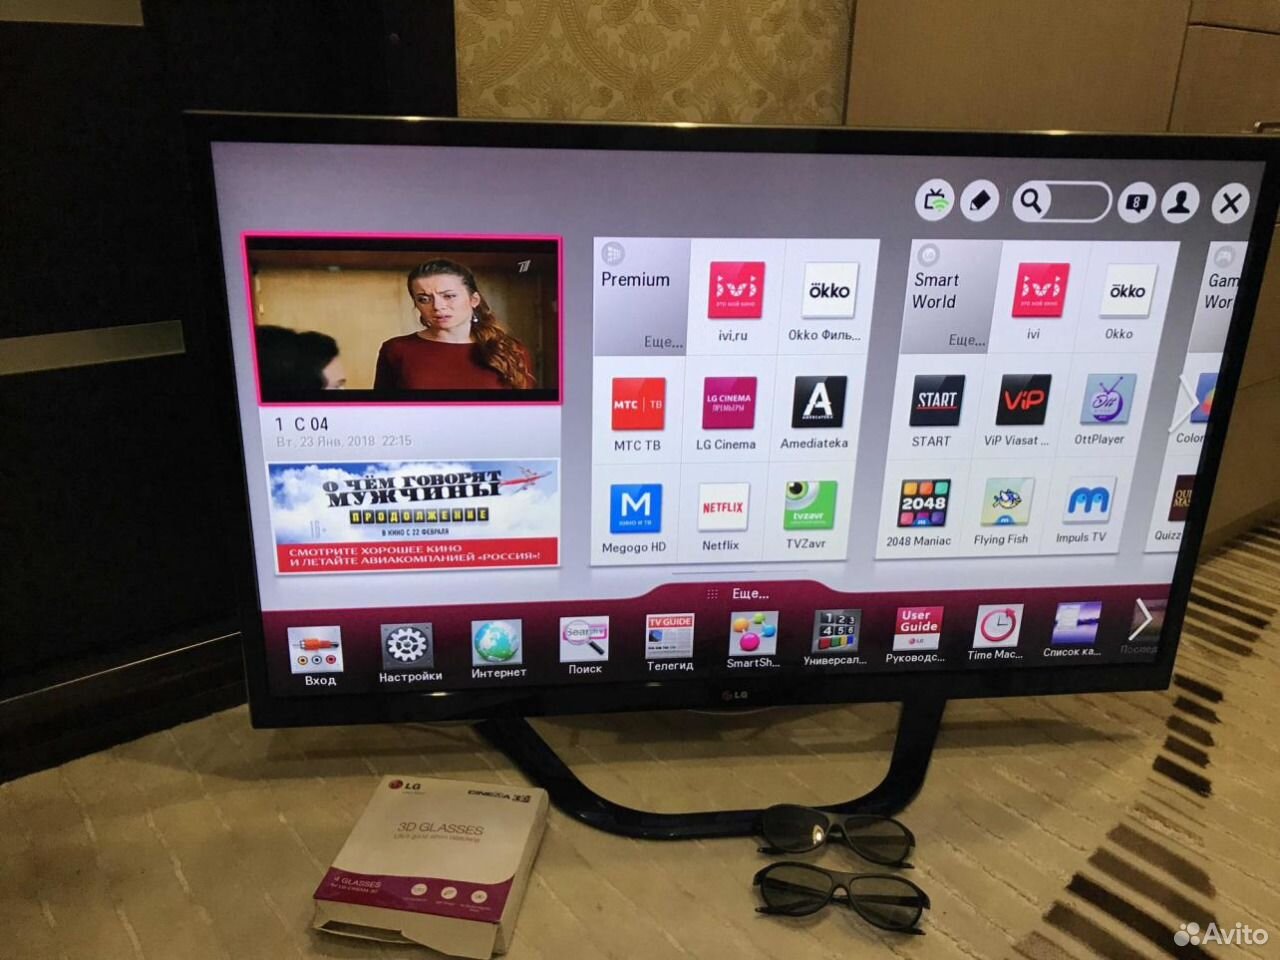 Купить б у жк телевизора. LG 42 Smart. Телевизор LG 42 Smart TV. LG Smart TV 42 дюйма. Телевизор LG 3d Cinema Smart 42 дюймов.